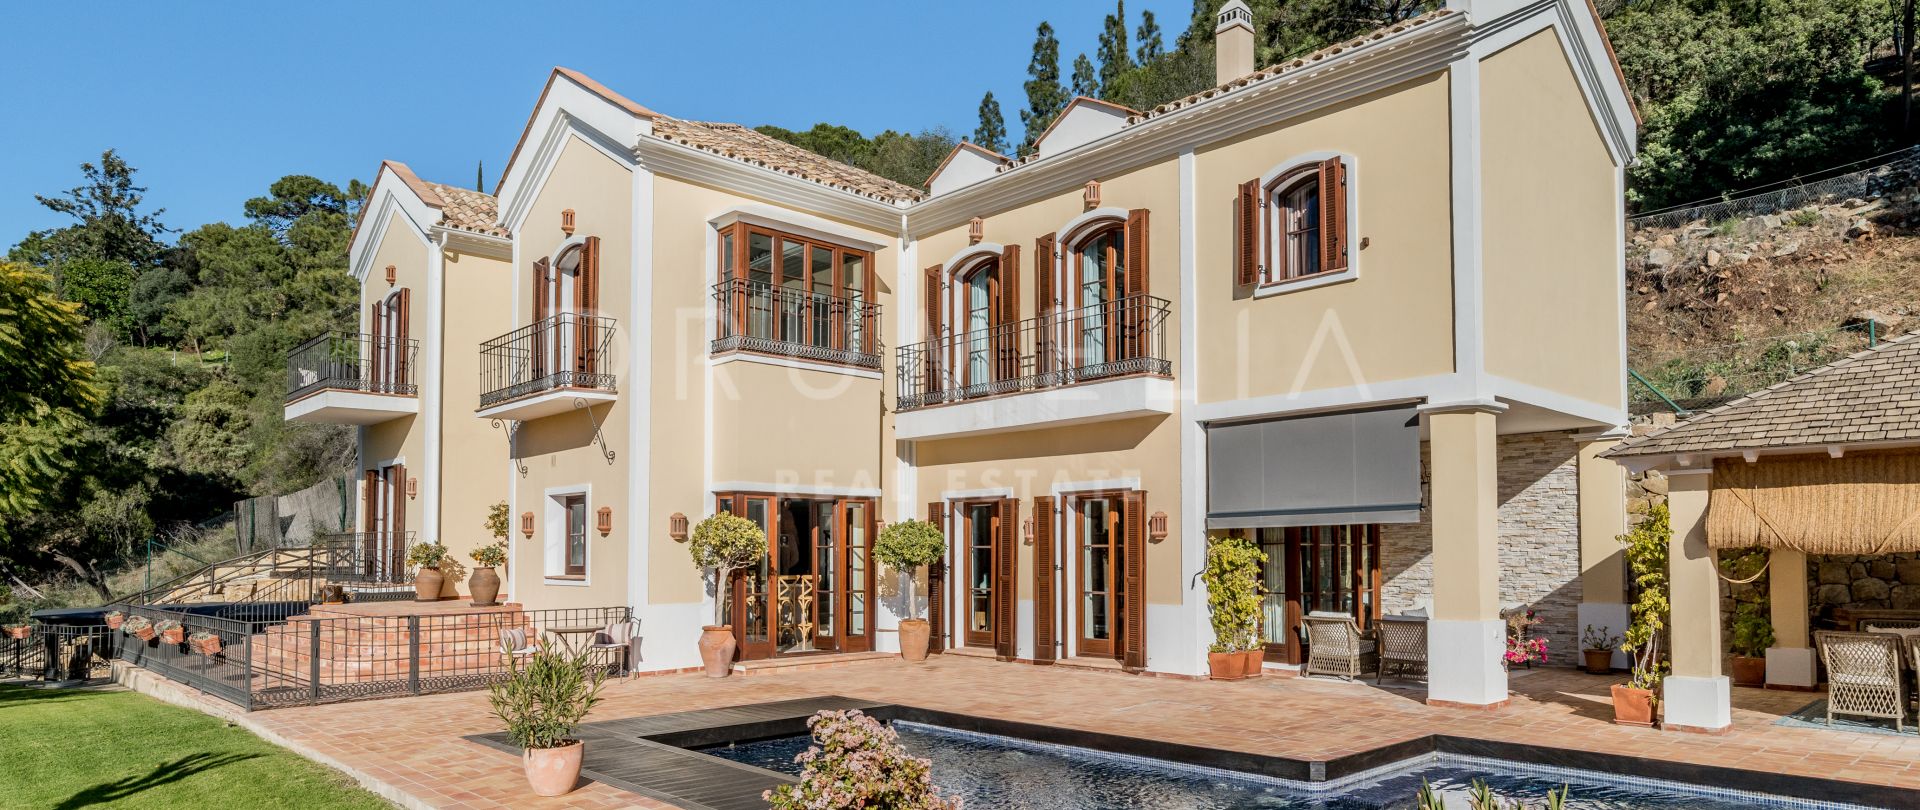 Prachtige luxe gezinsvilla in mediterrane stijl met zuidelijke charme in El Madroñal, Benahavis